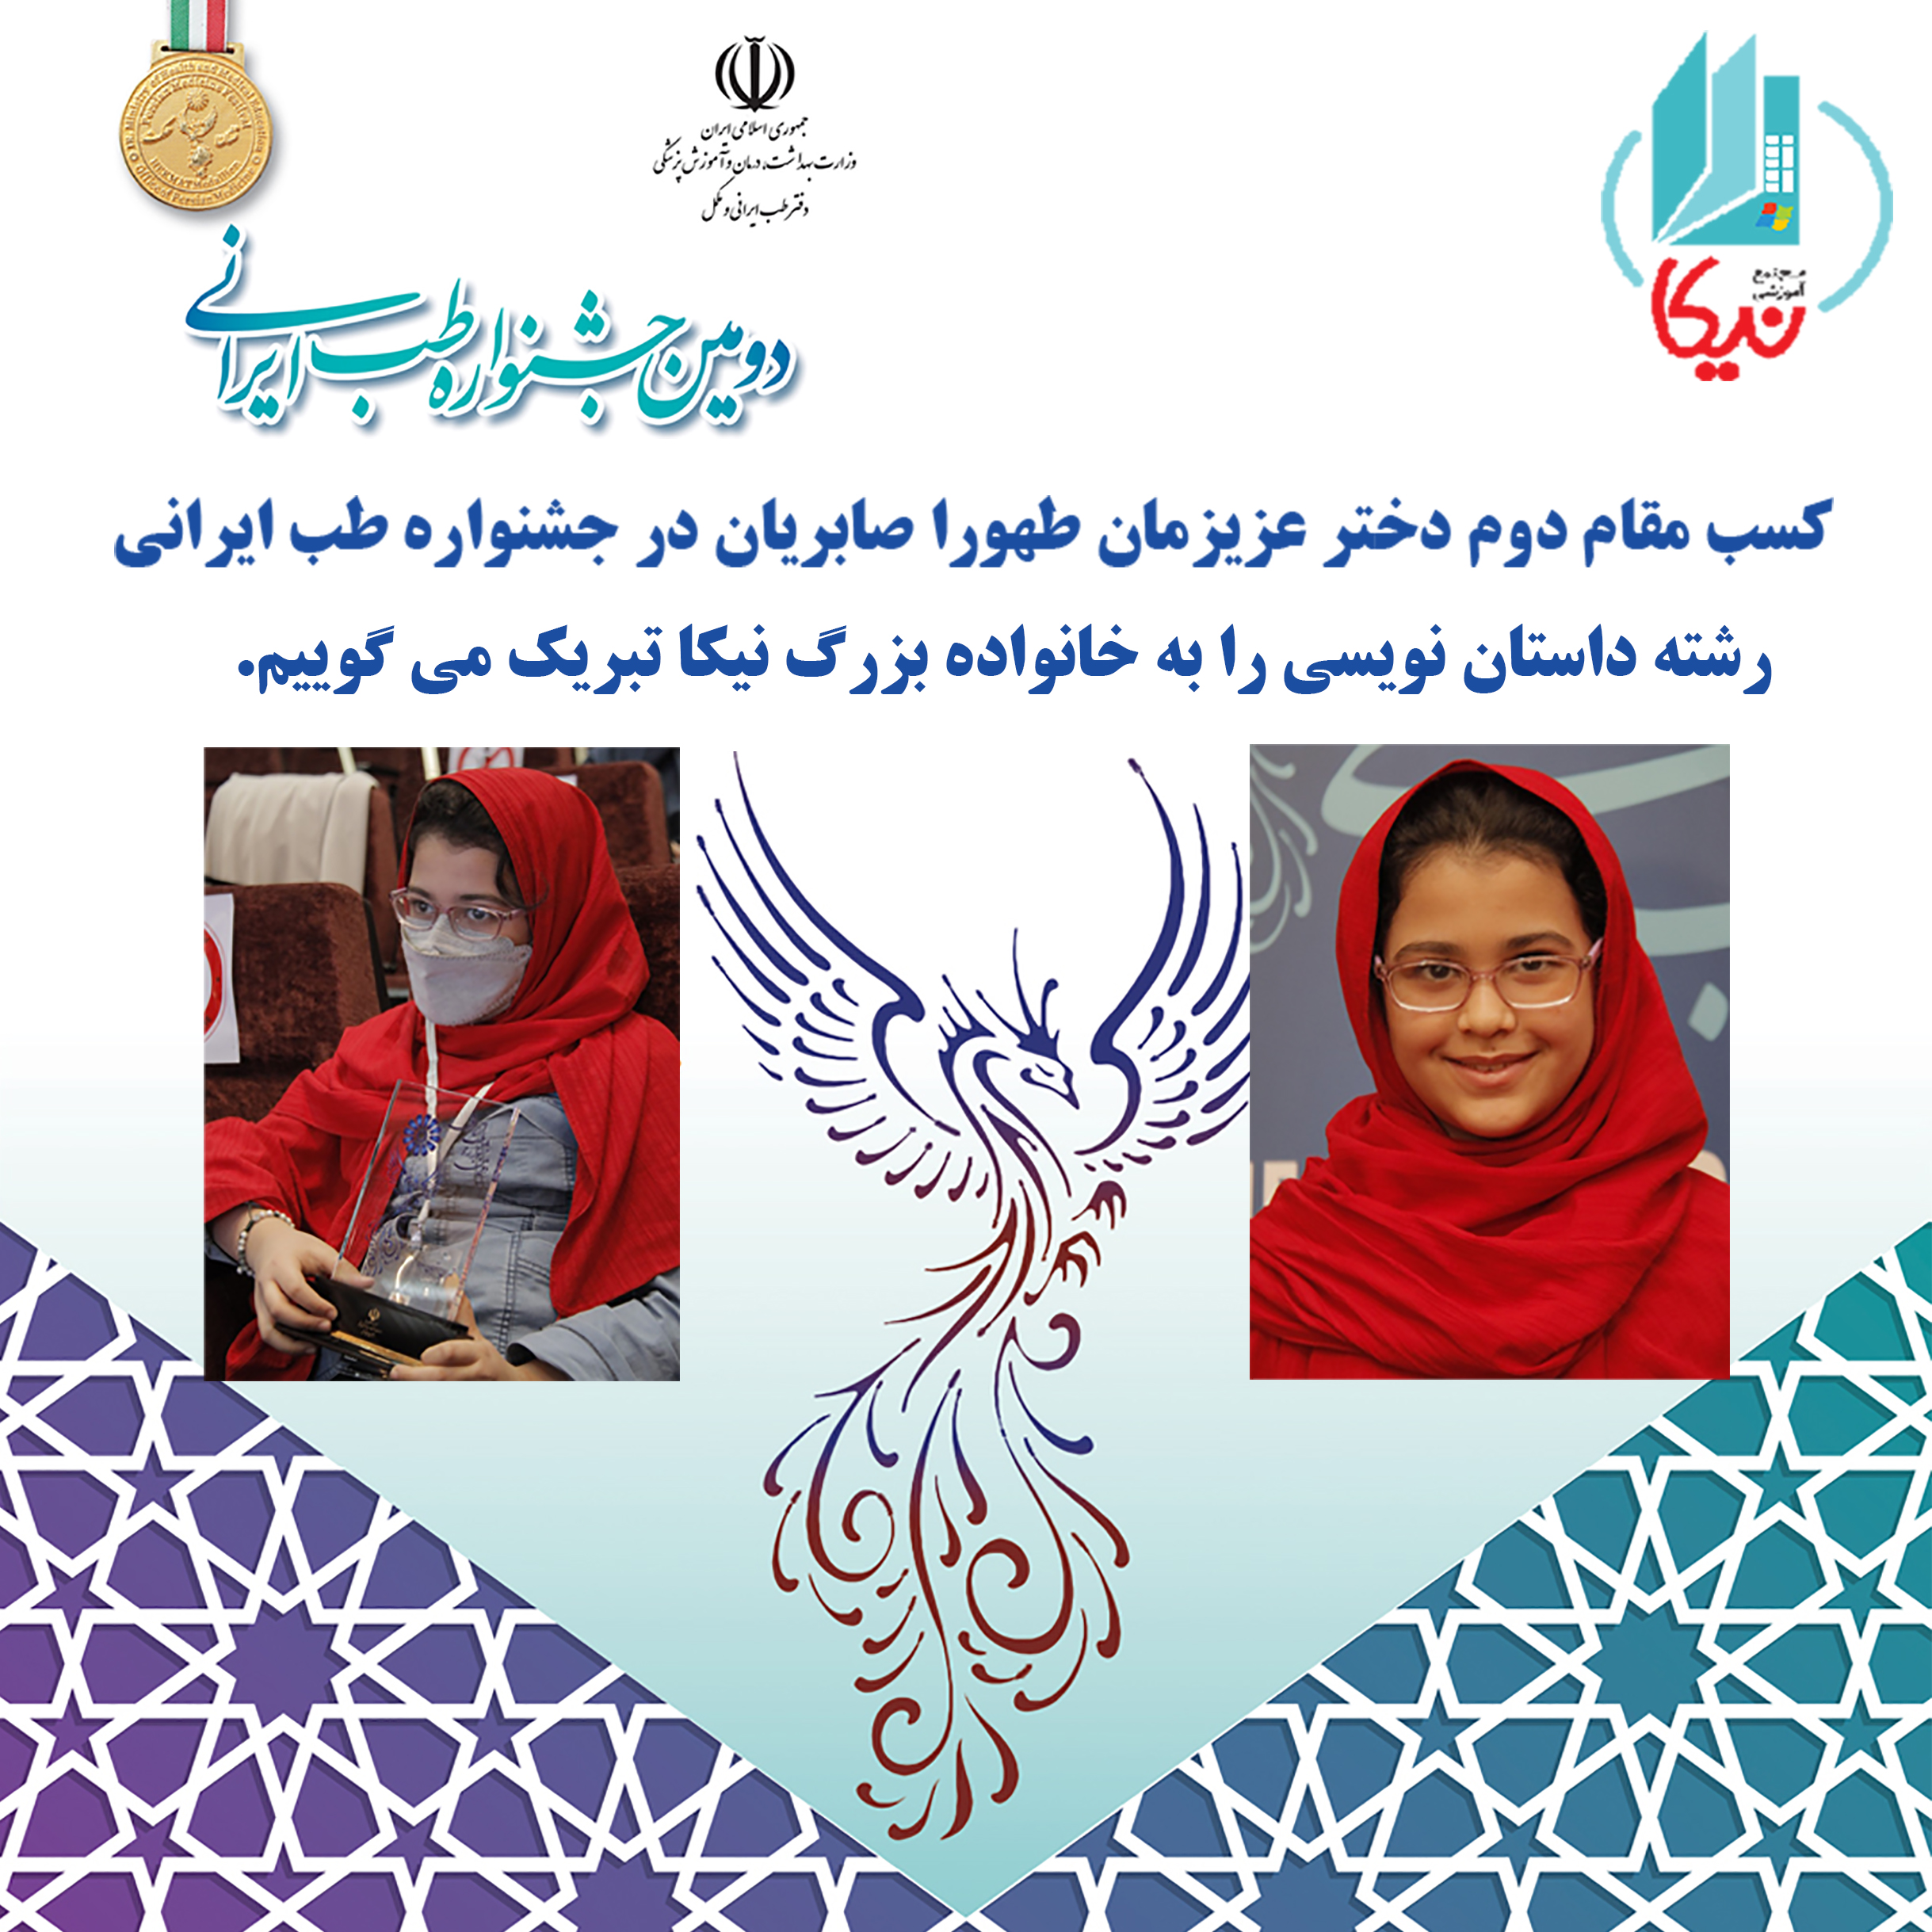 کسب مقام دوم در جشنواره طب ایرانی در رشته داستان نویسی